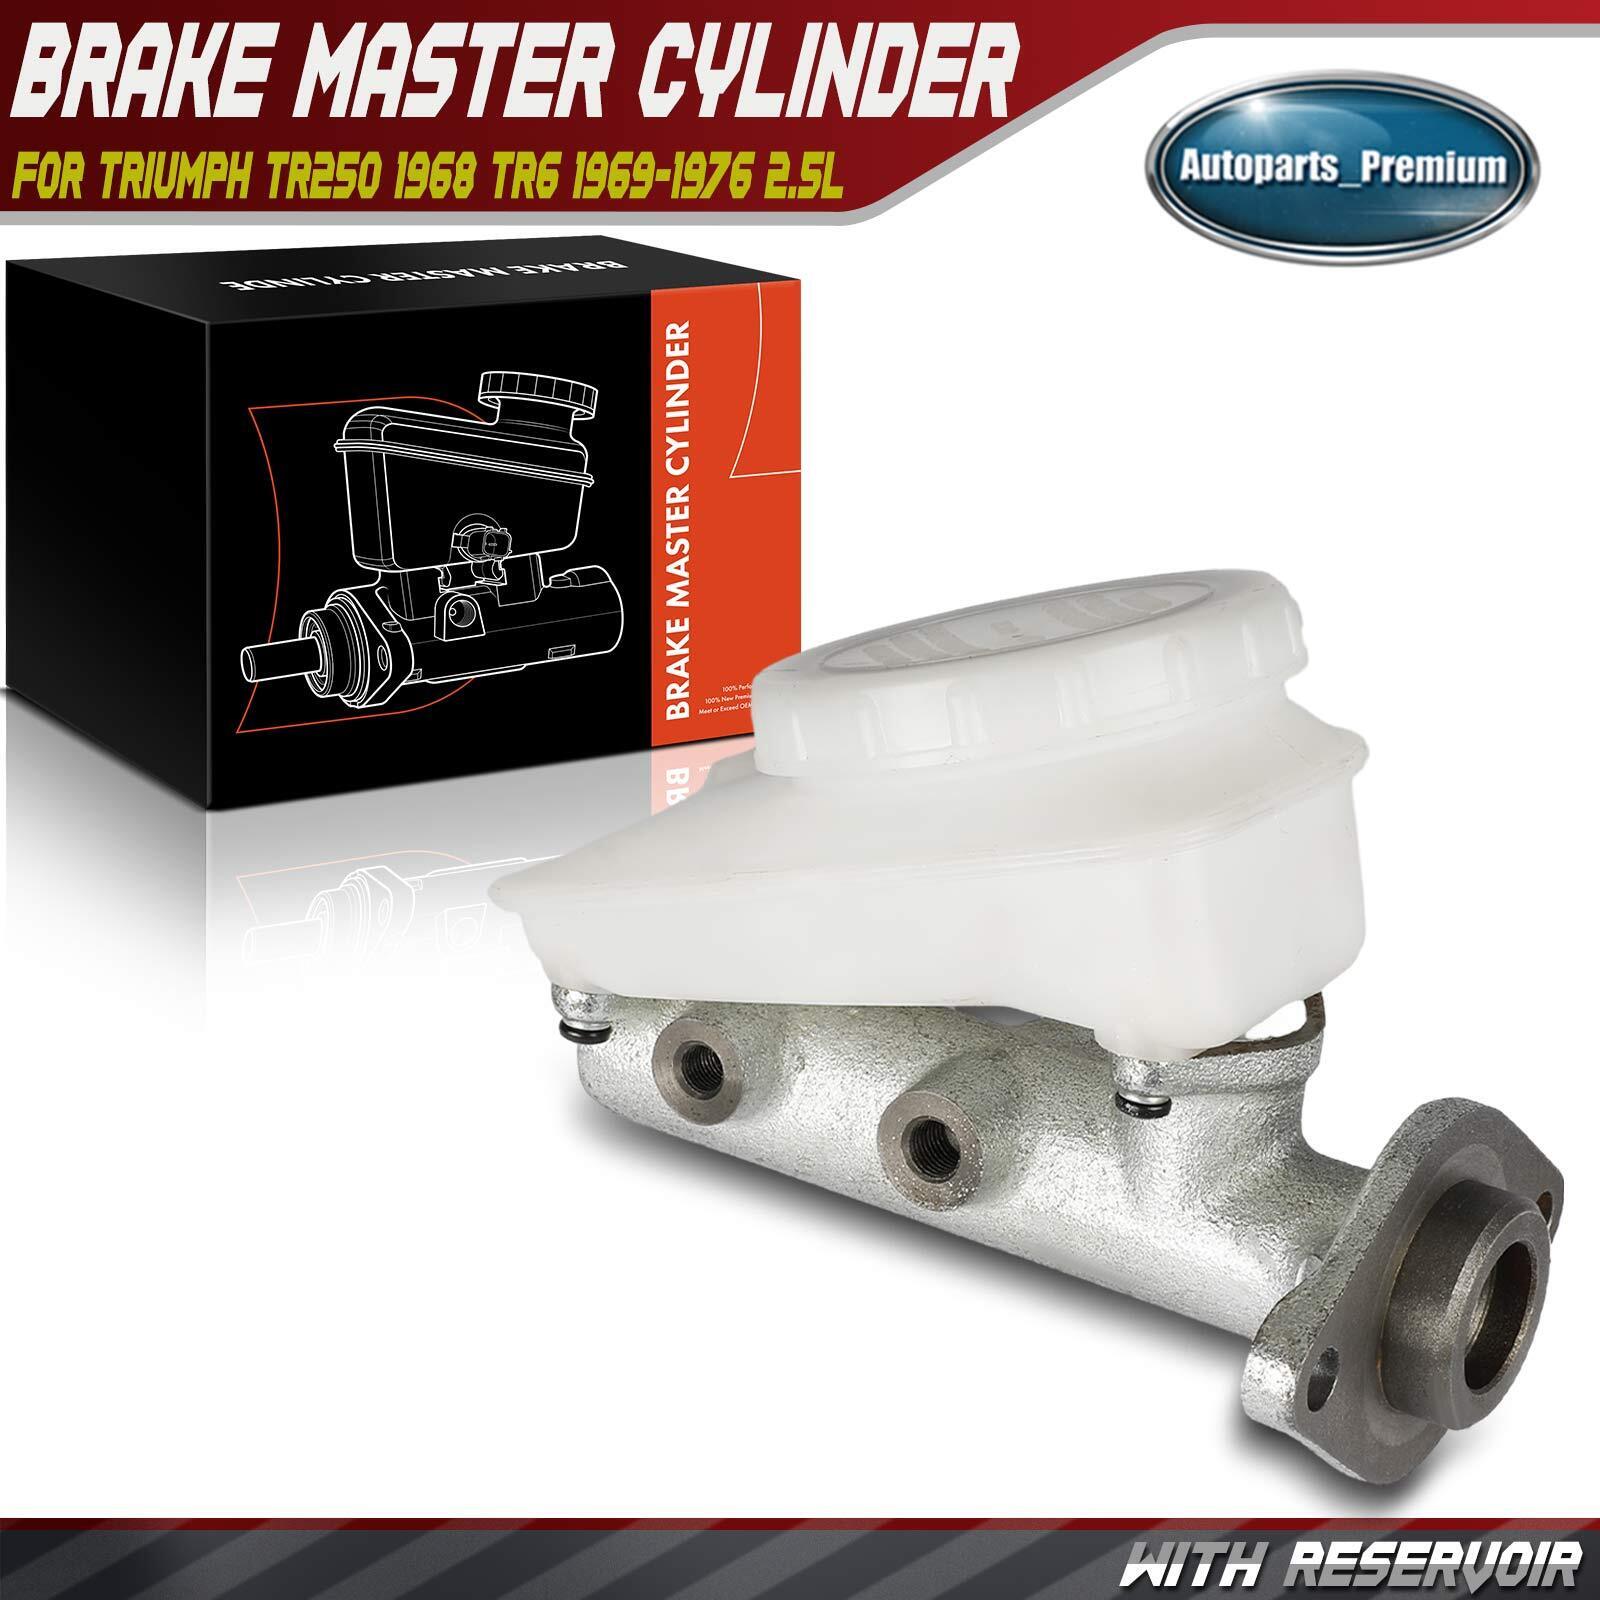 Brake Master Cylinder w/ Reservoir for Triumph TR250 1968 TR6 1969-1976 L6 2.5L